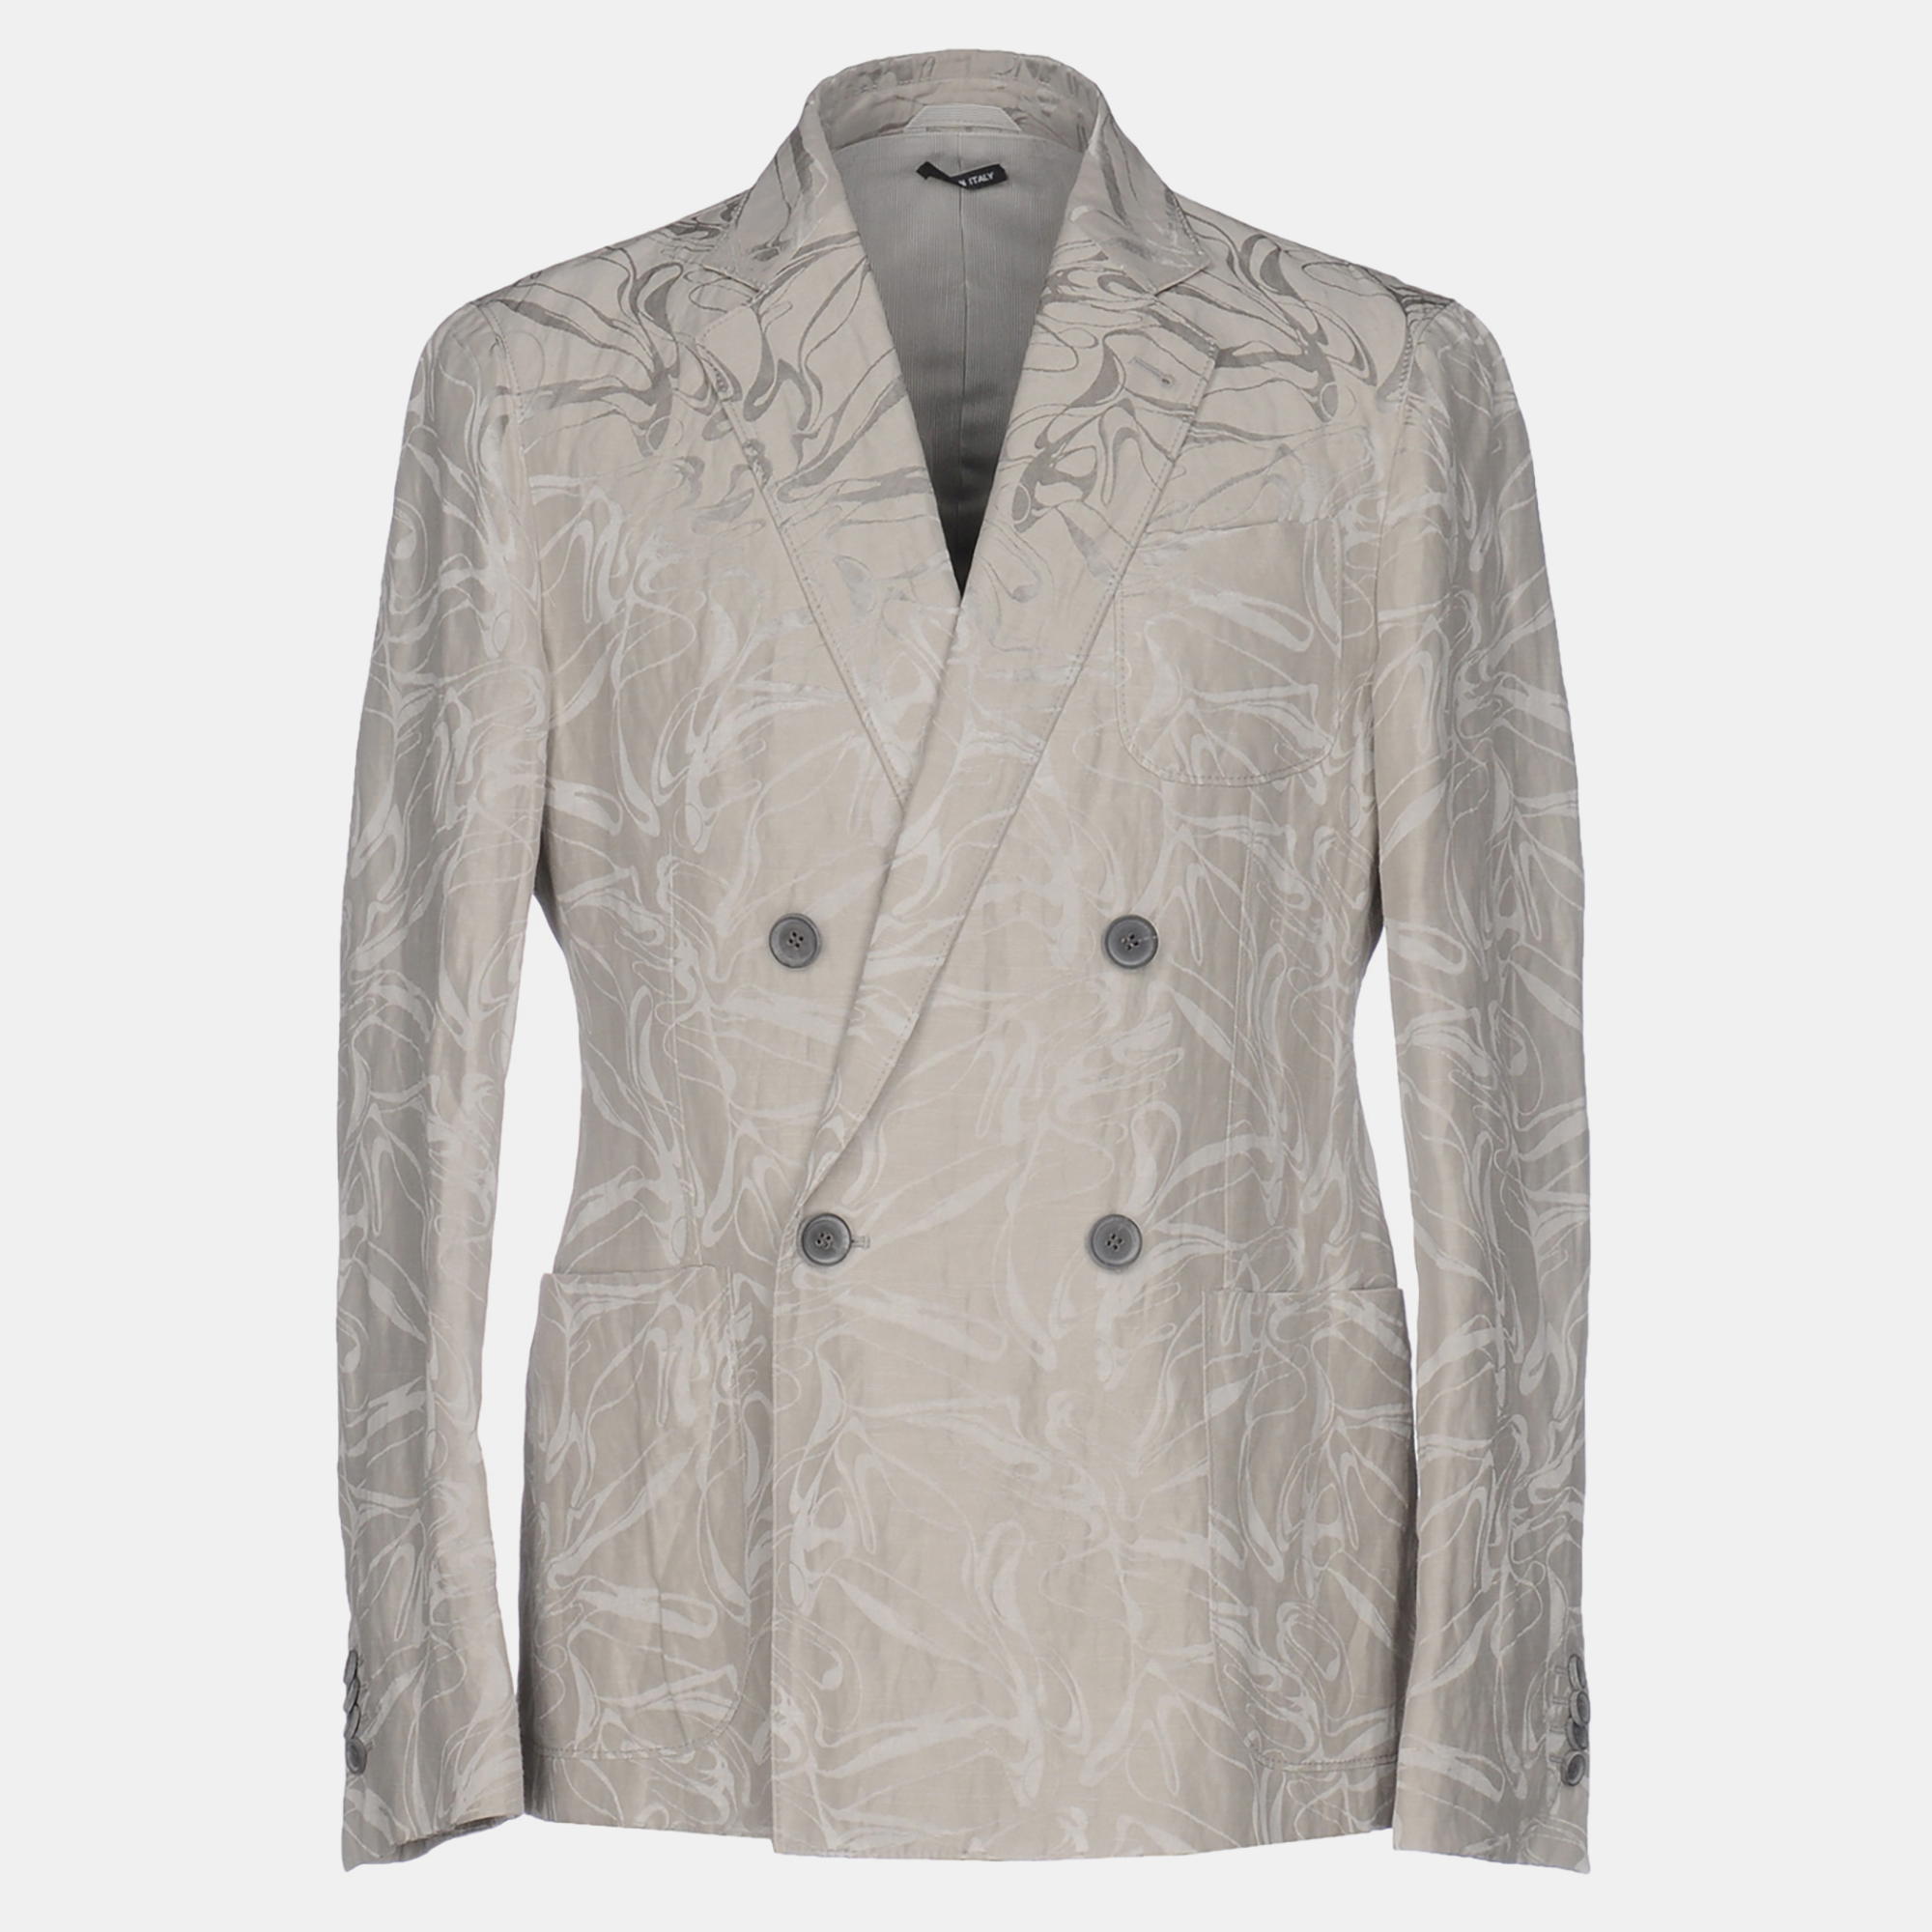 Giorgio armani grey jacquard upton blazer xxxl (it 56)